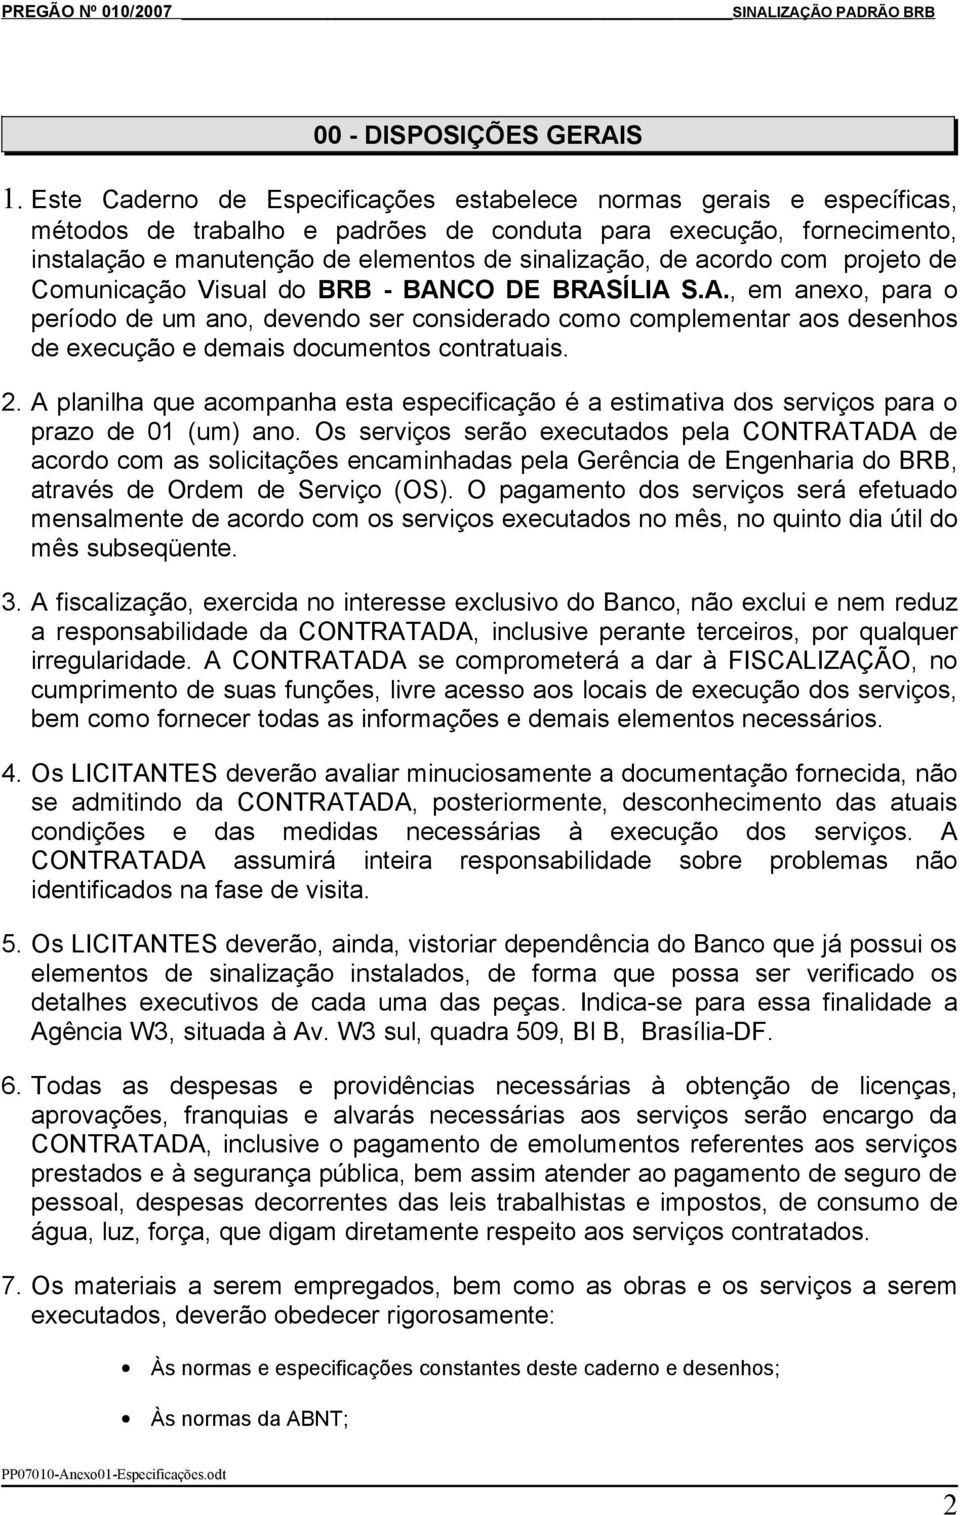 acordo com projeto de Comunicação Visual do BRB - BANCO DE BRASÍLIA S.A., em anexo, para o período de um ano, devendo ser considerado como complementar aos desenhos de execução e demais documentos contratuais.